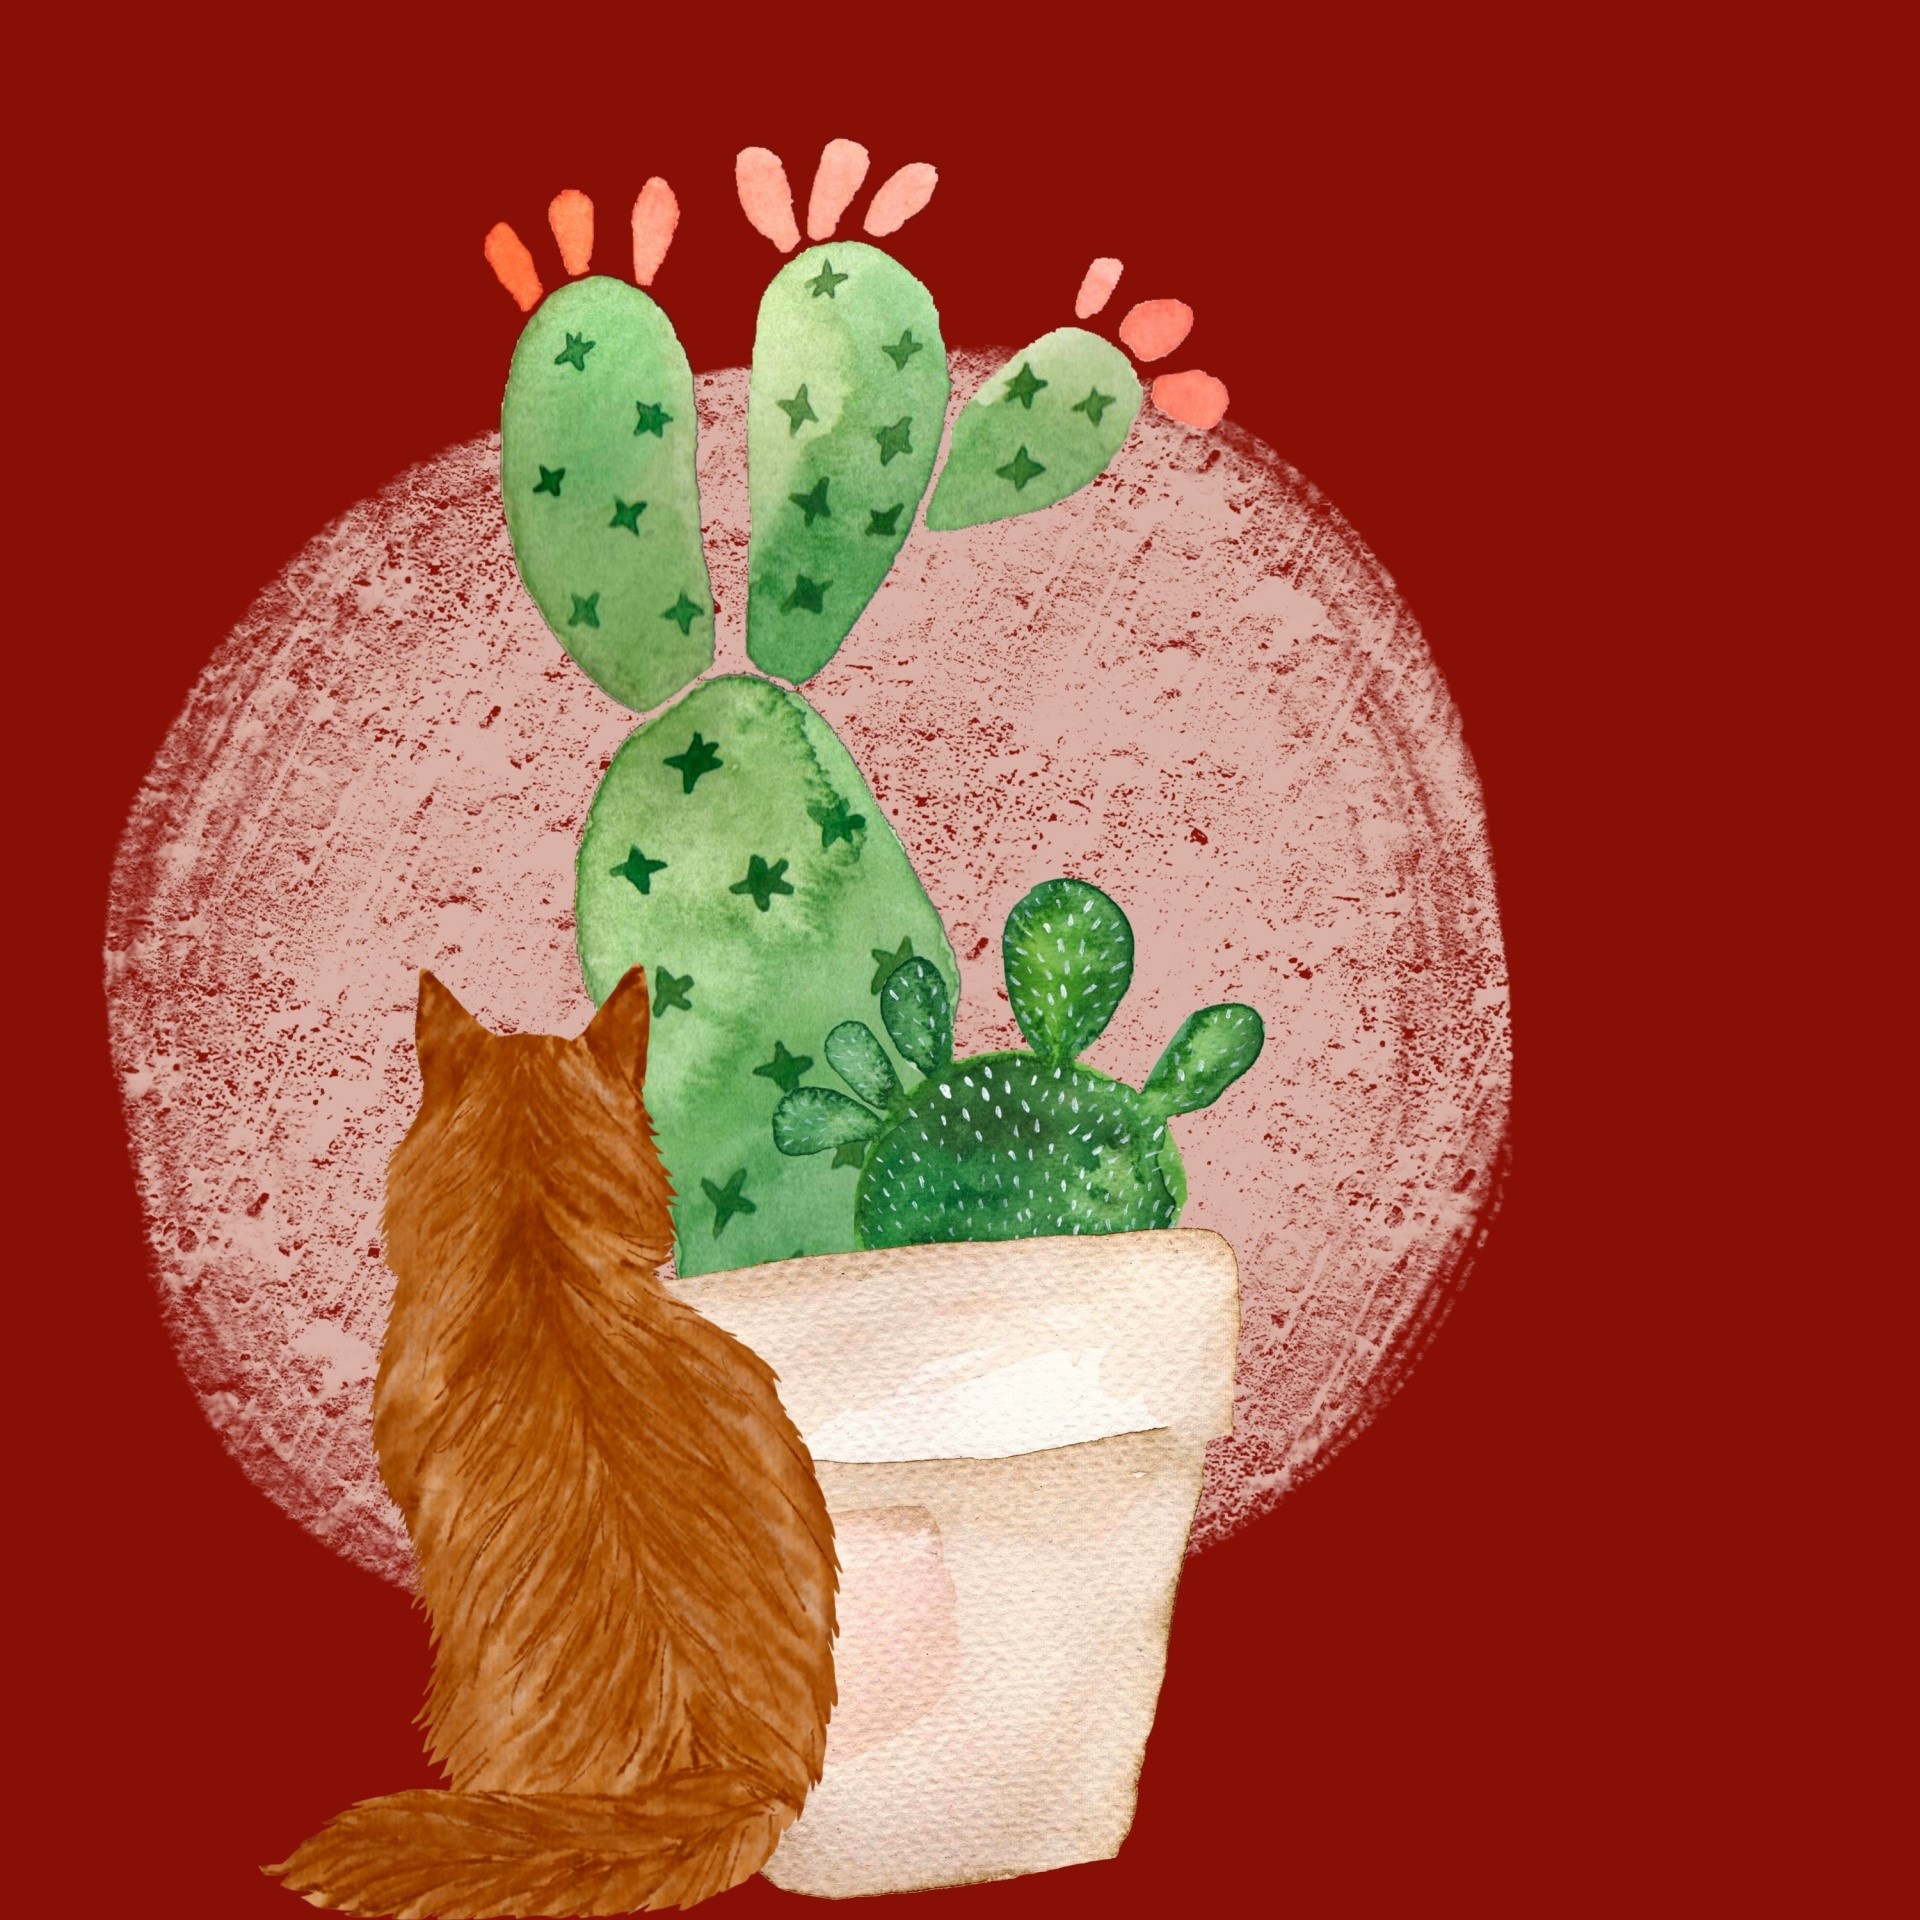 Kat en cactus illustratie